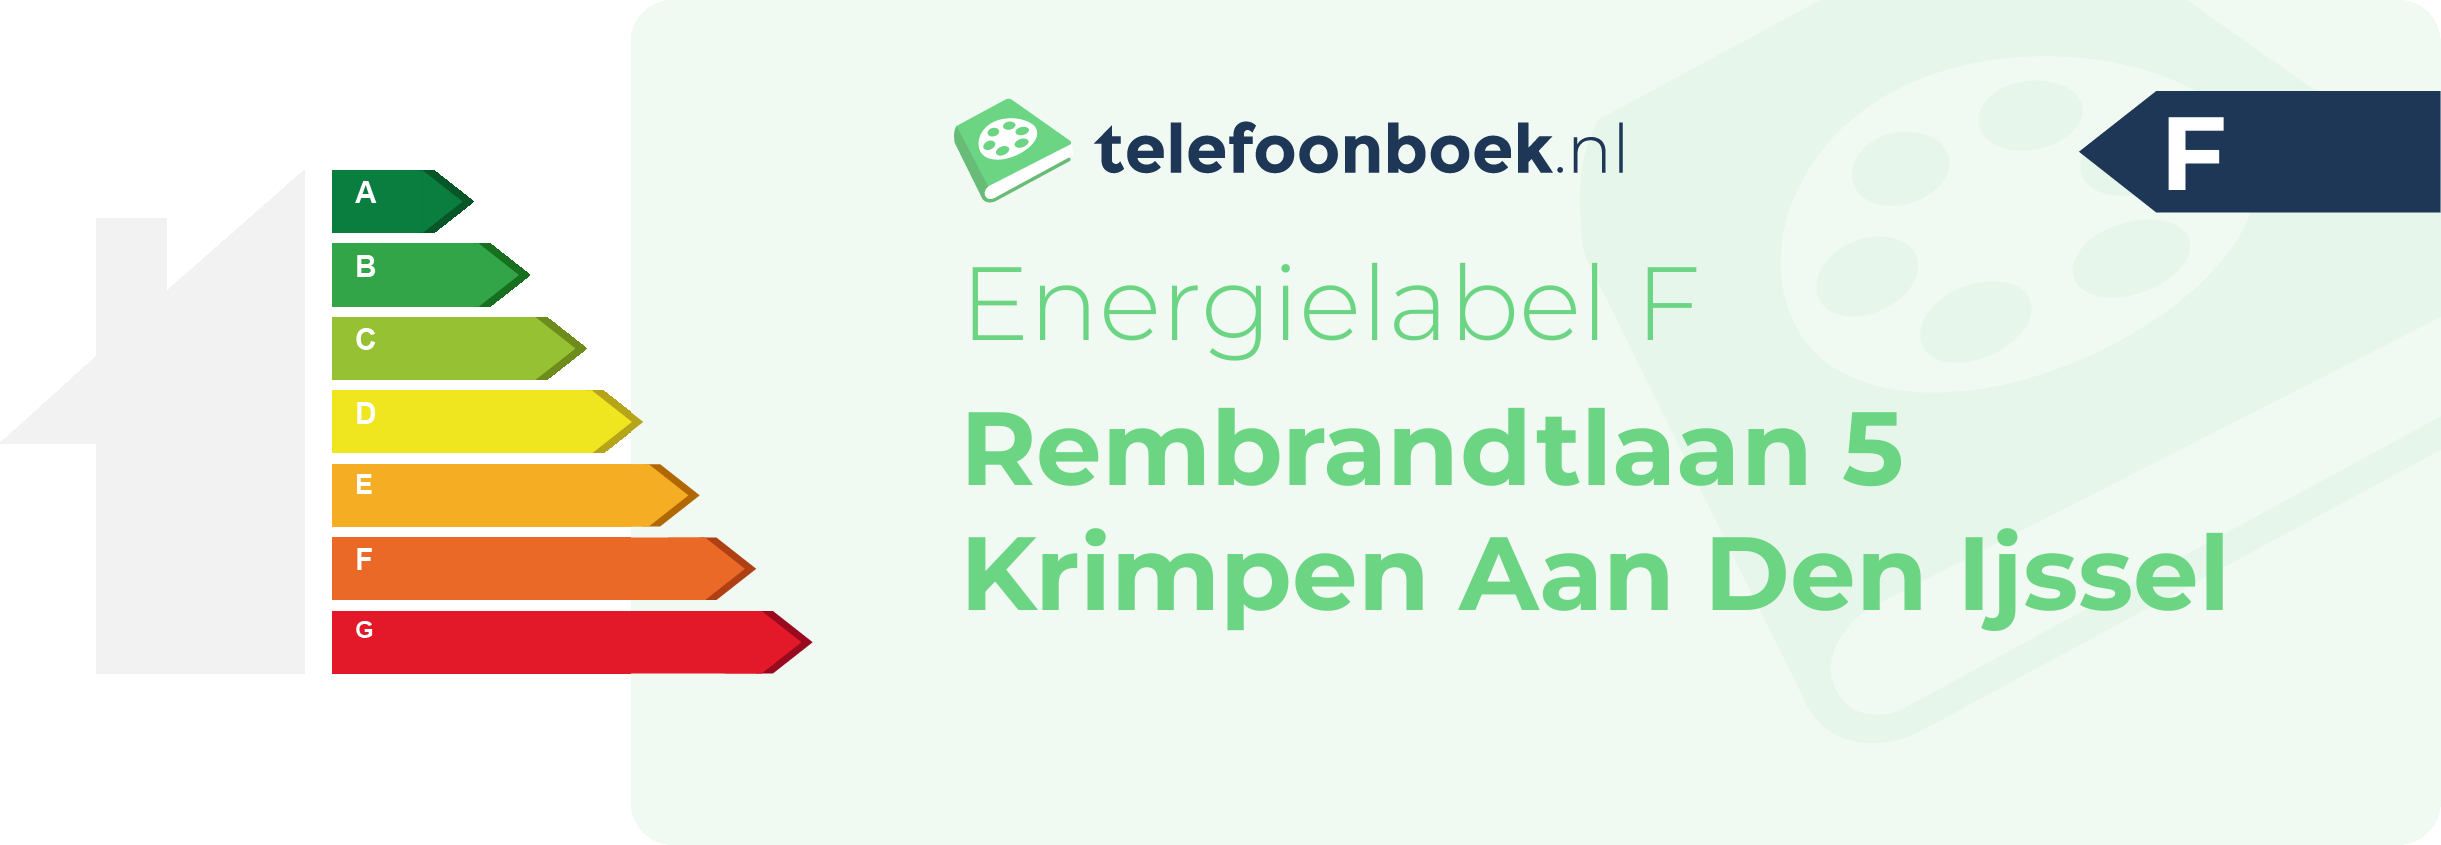 Energielabel Rembrandtlaan 5 Krimpen Aan Den Ijssel